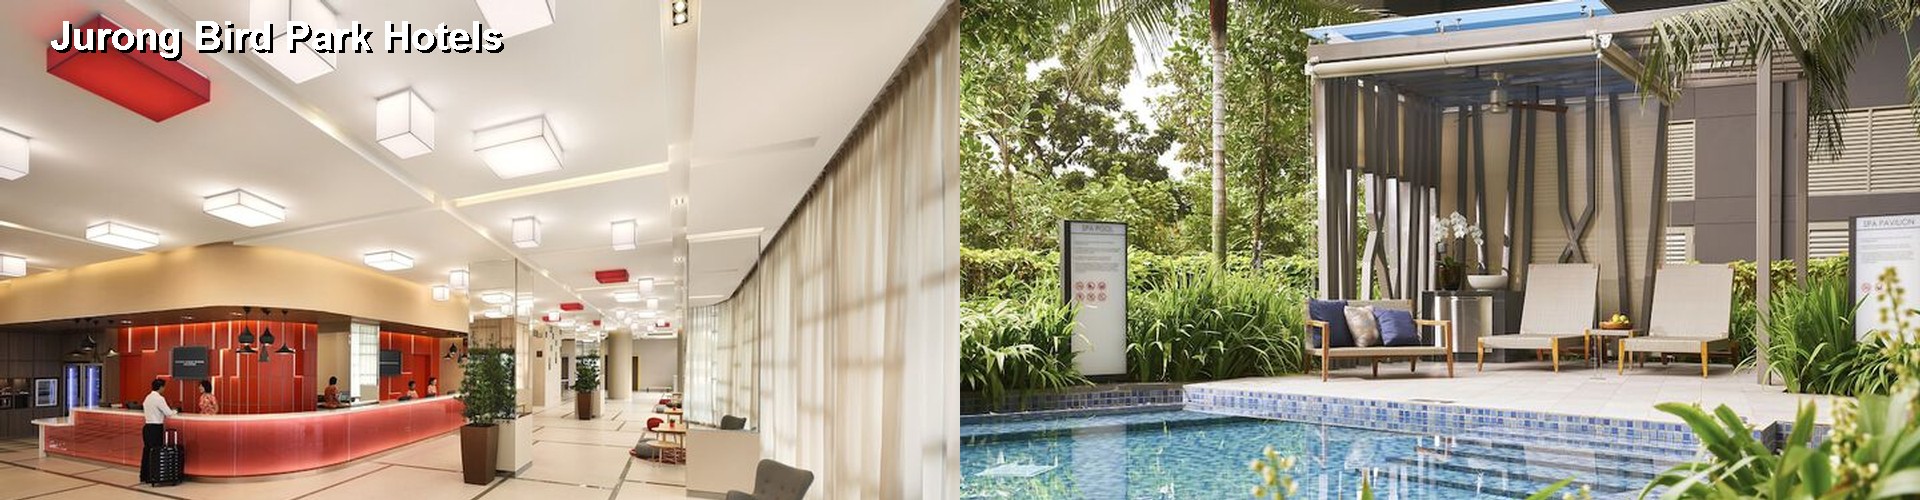 4 Best Hotels near Jurong Bird Park